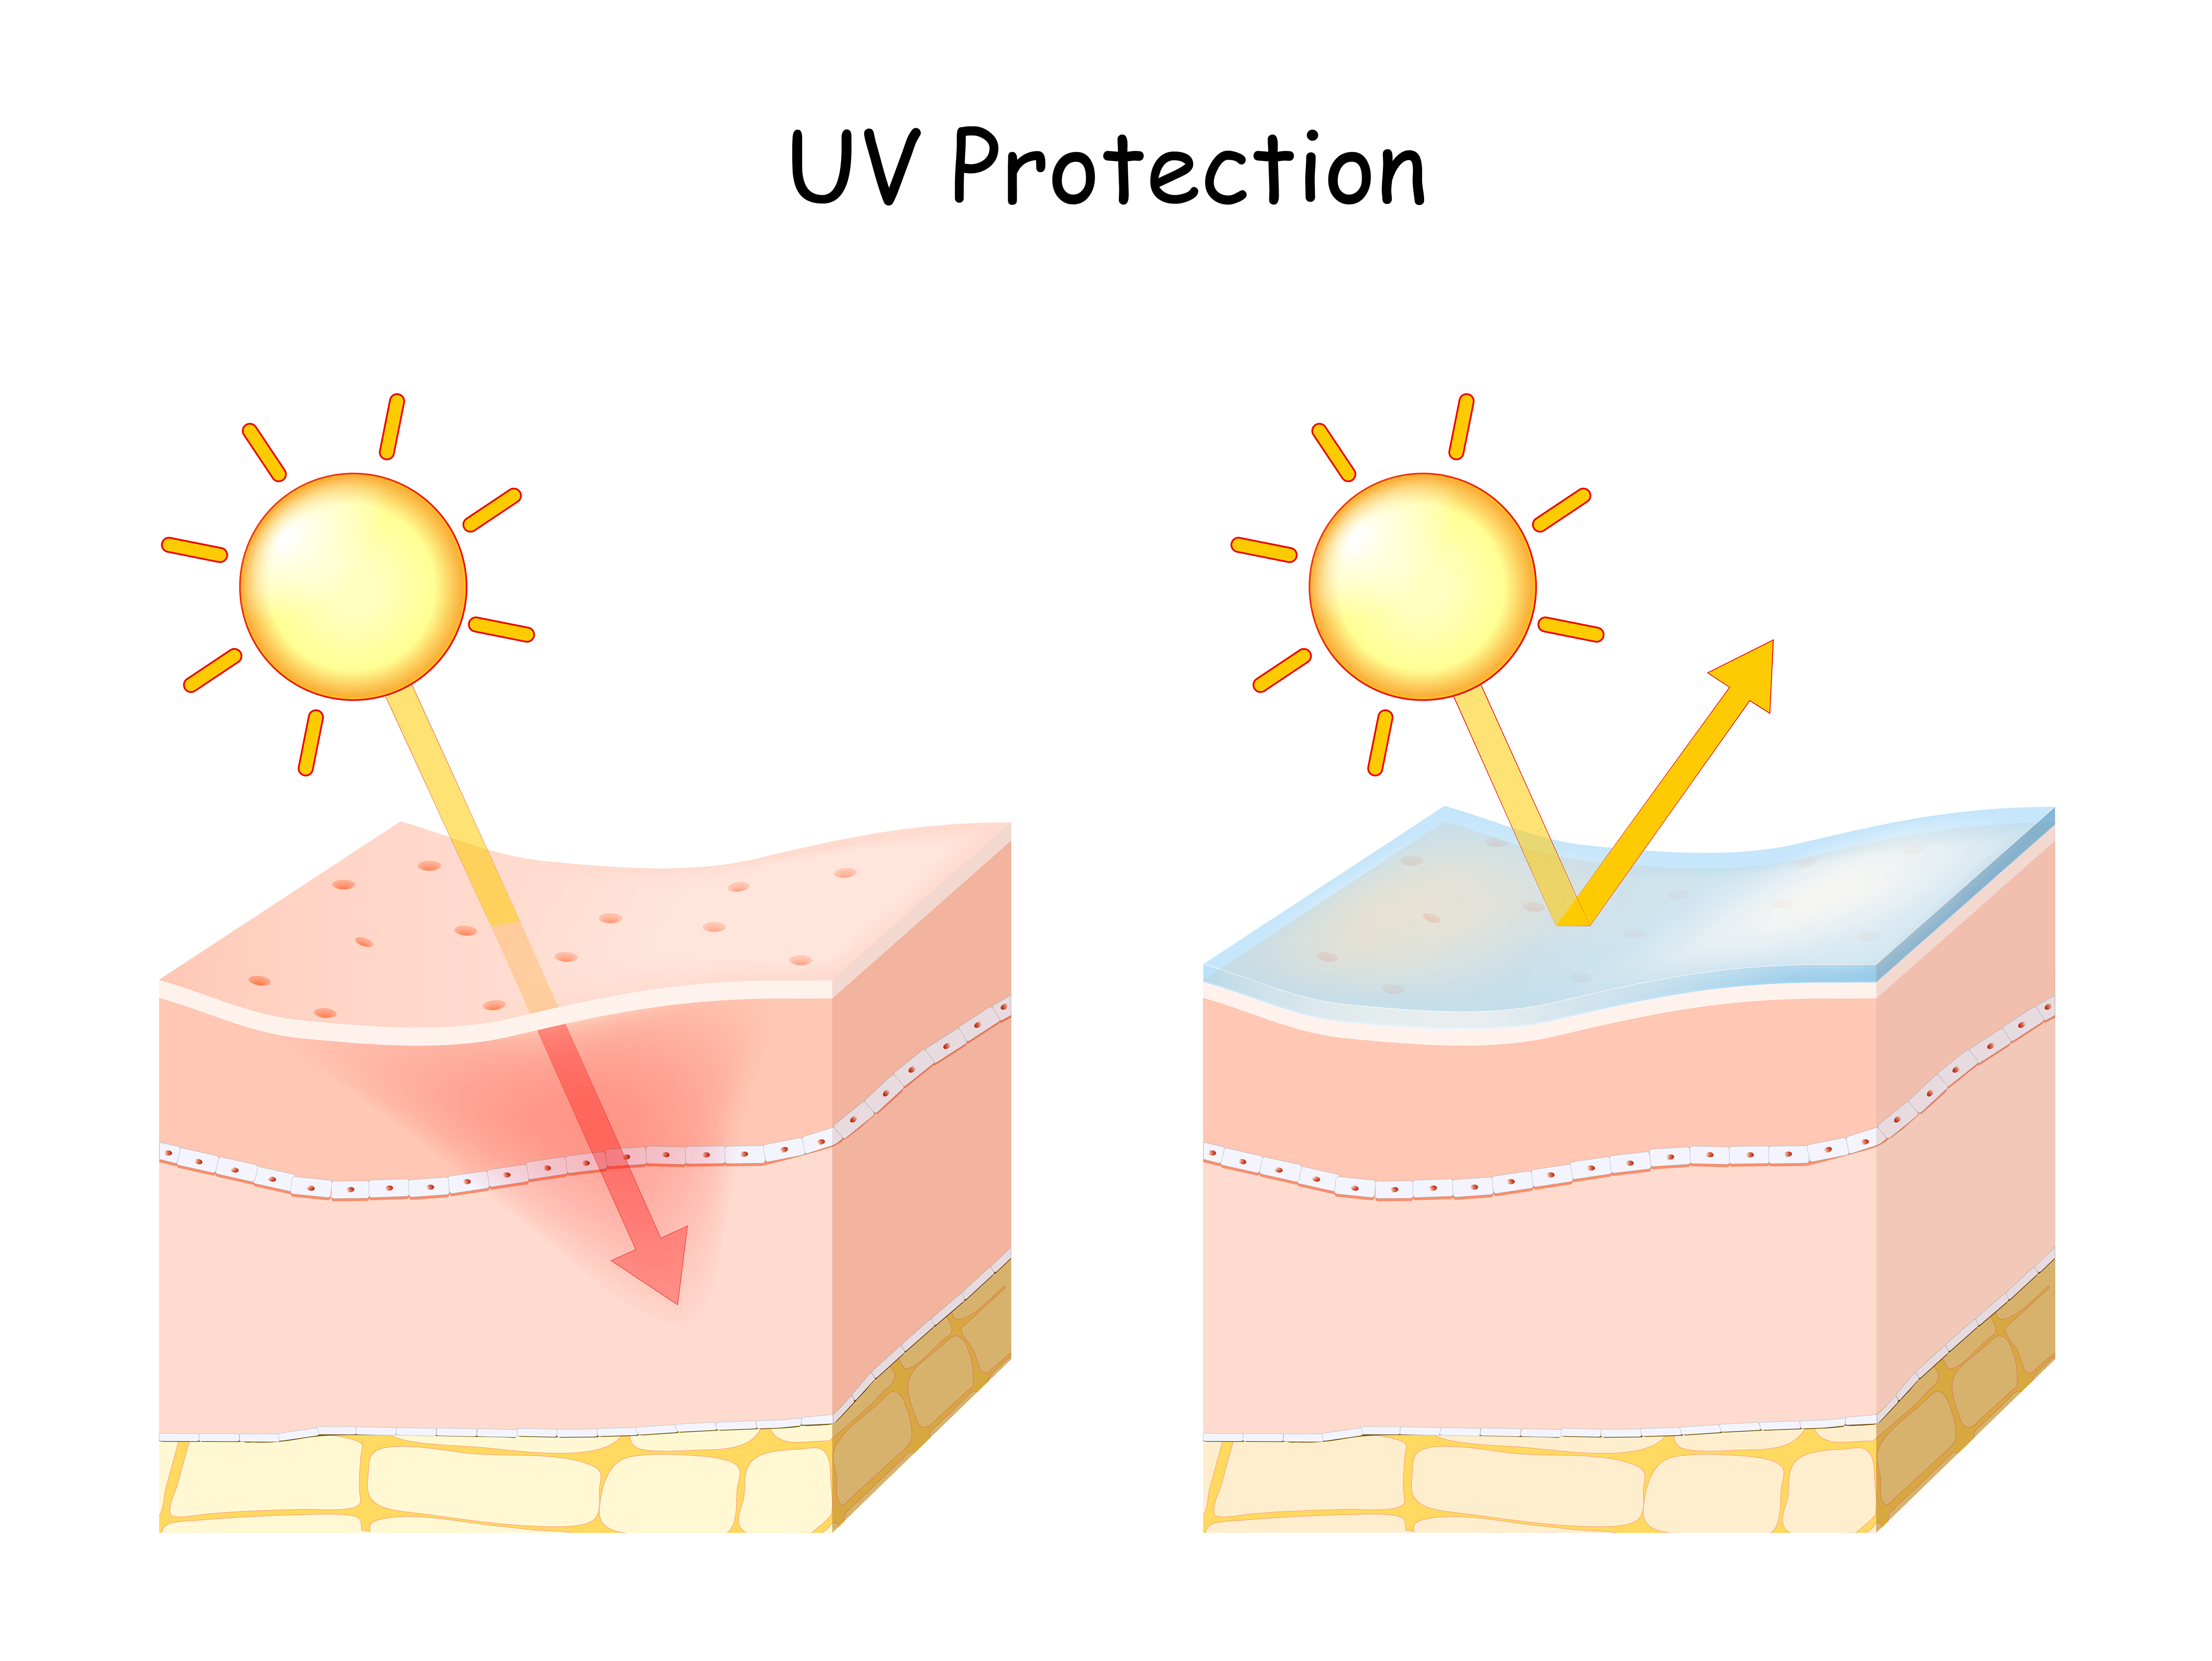 一般物理性防曬大部分成分以二氧化鈦(Titanium Dioxide) 跟氧化鋅（Zinc Oxide）為主。物理性防曬是透過粉末「反射」陽光中的紫外線來保護皮膚。